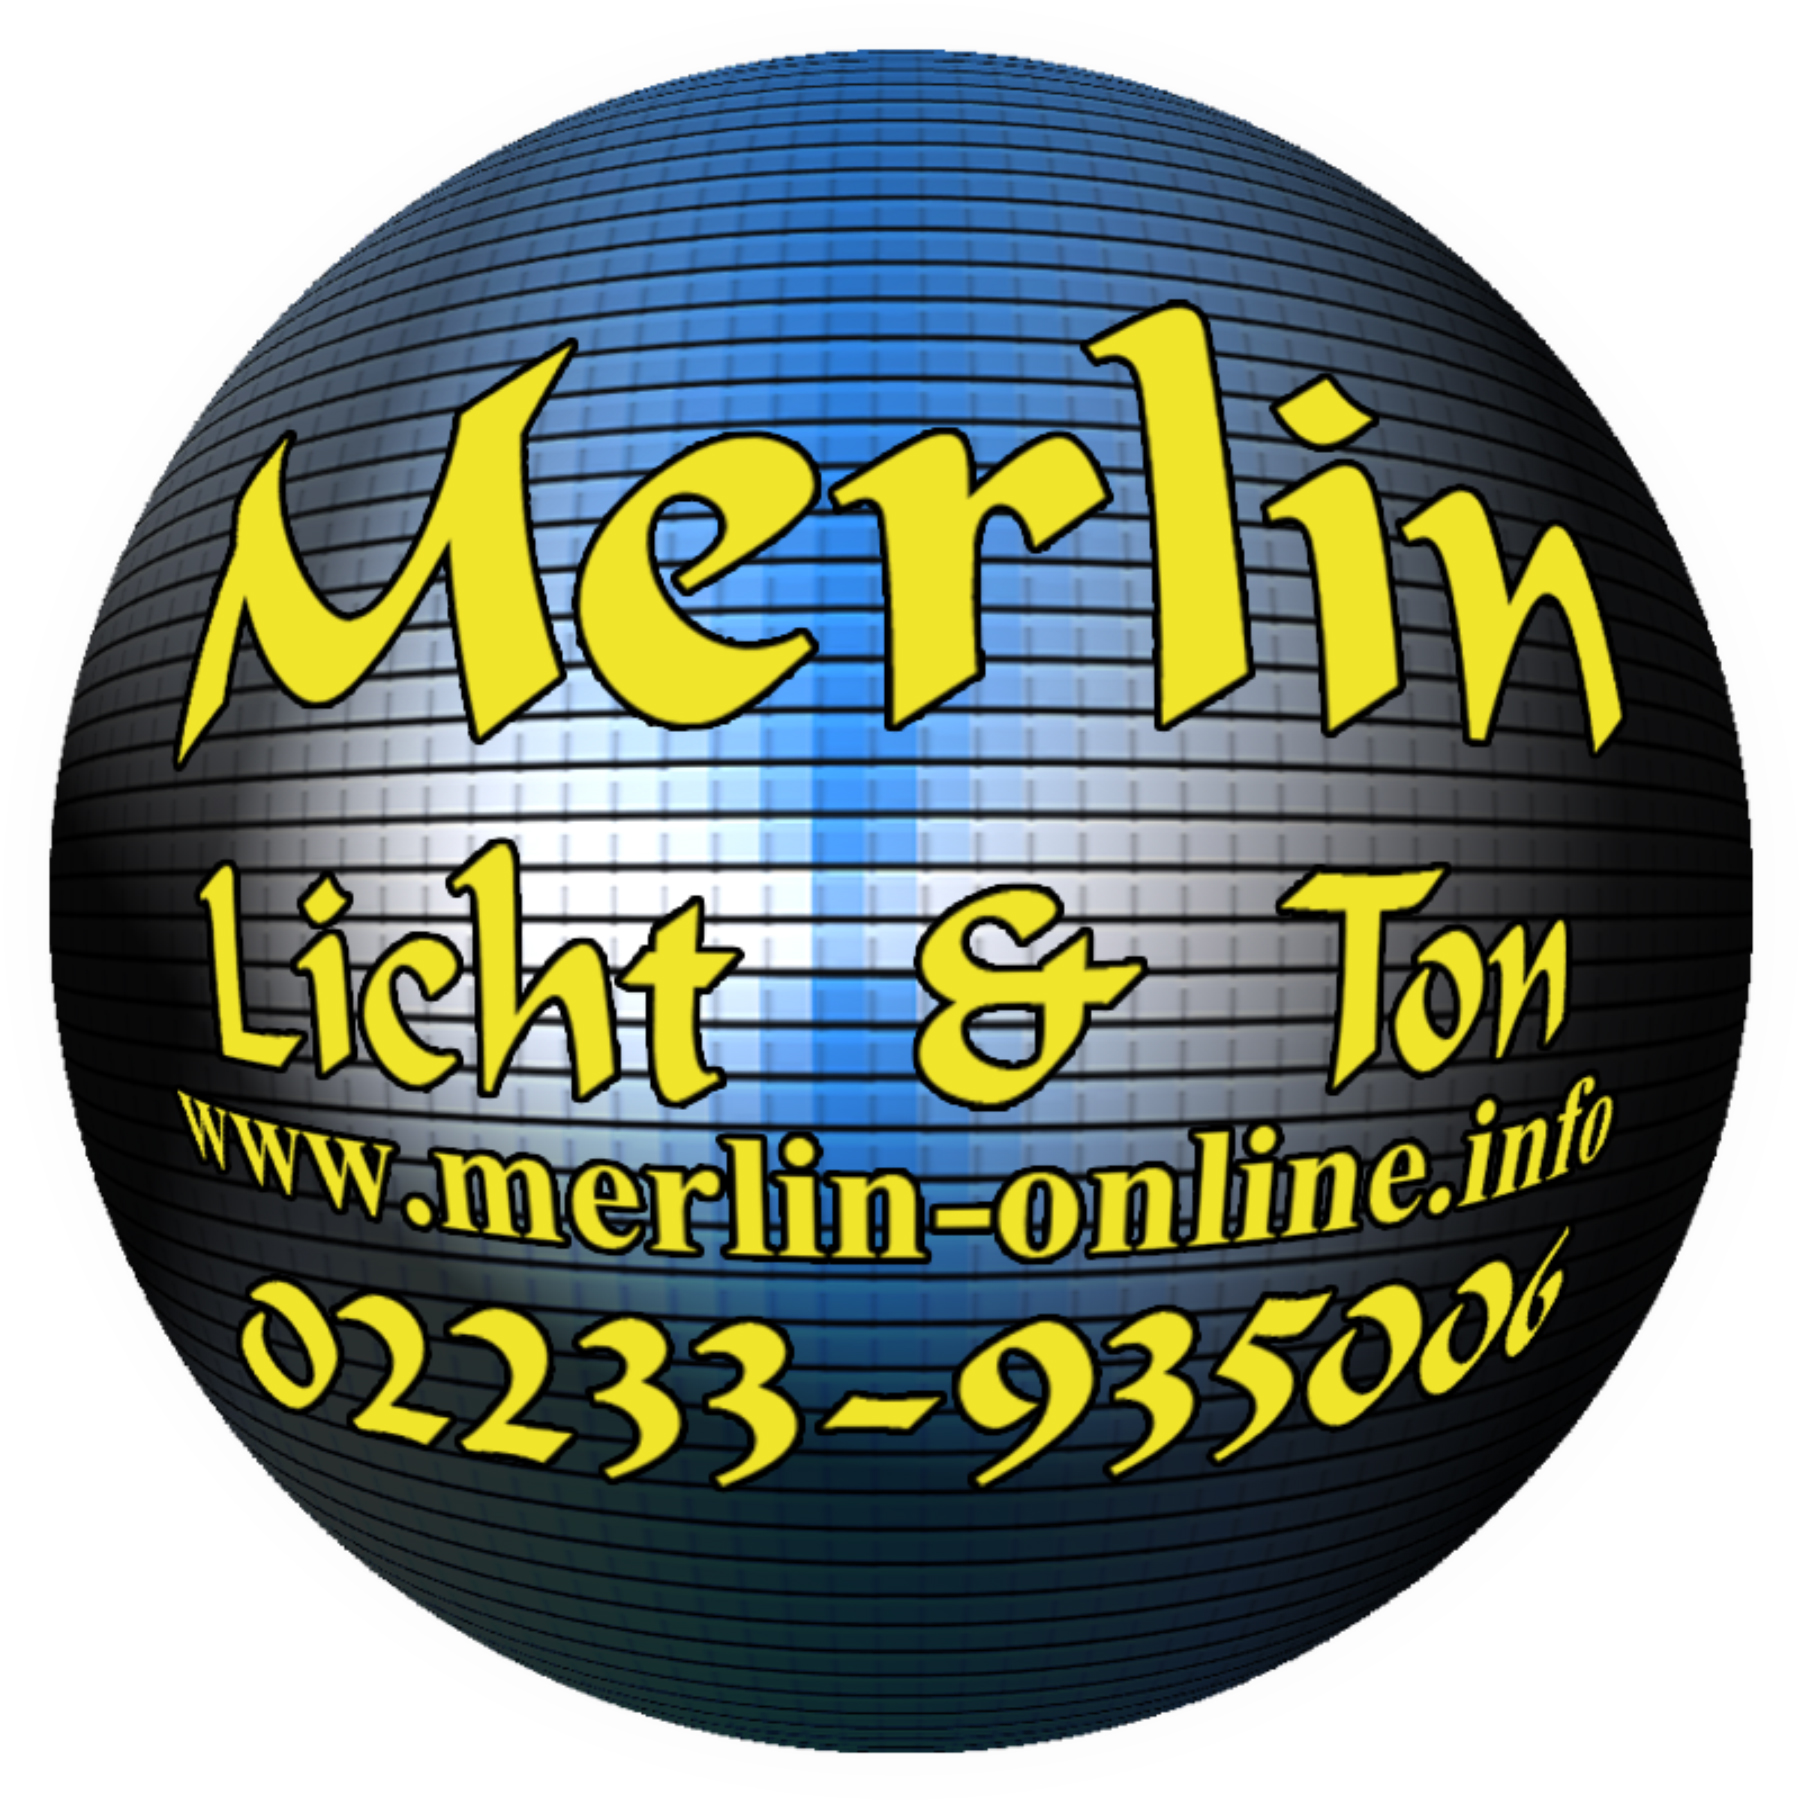 (c) Merlin-online.info